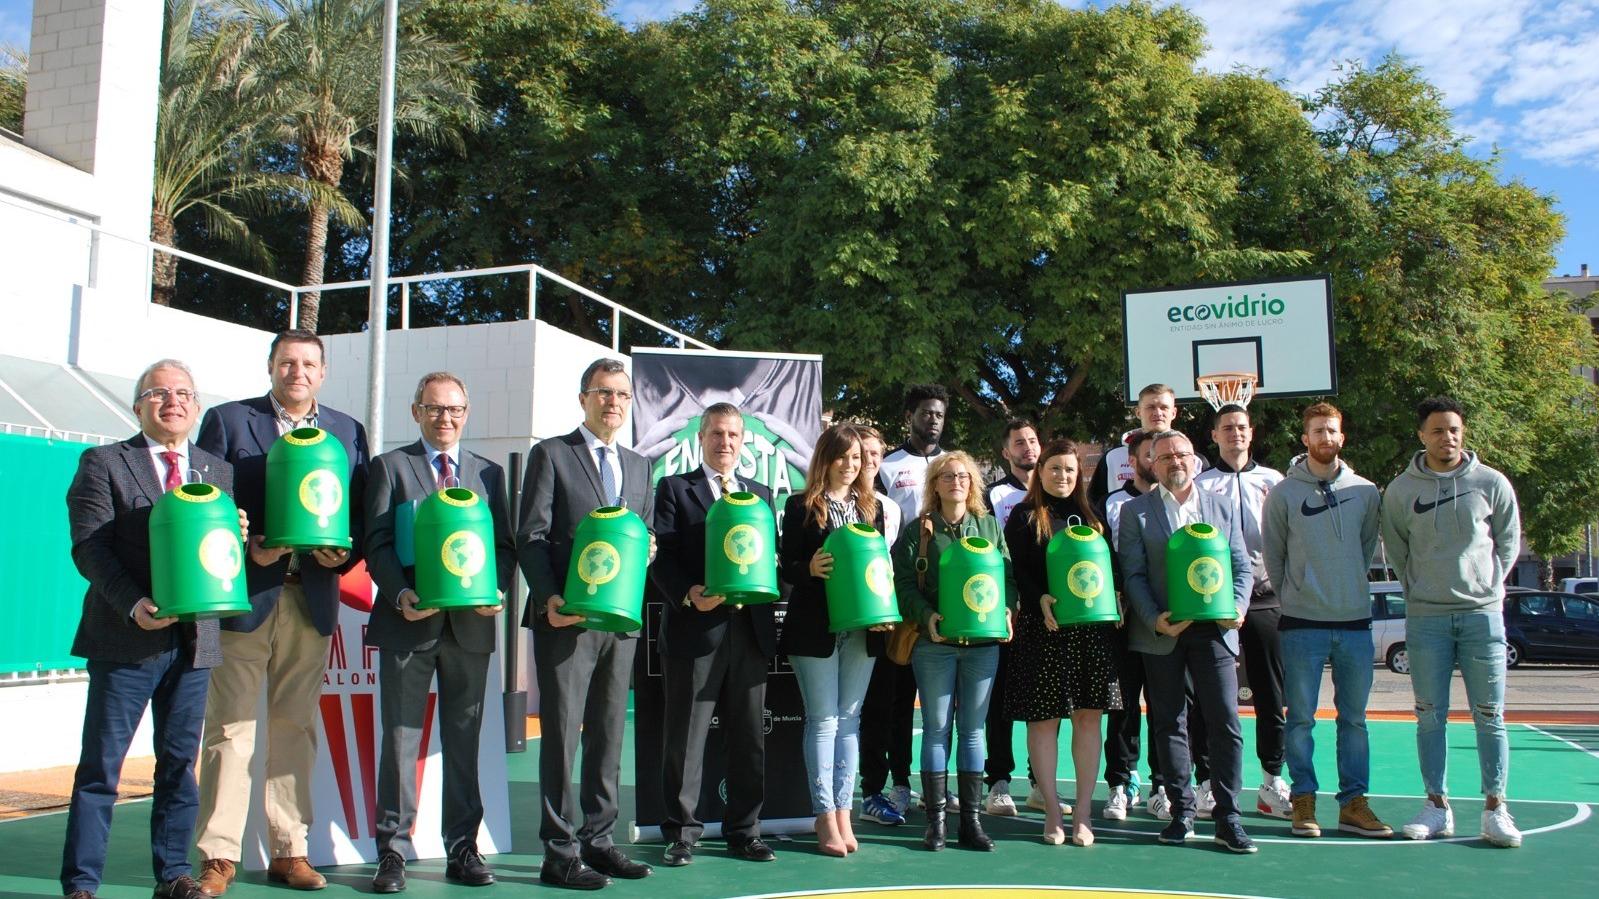 La Región de Murcia ya cuenta con la primera pista de baloncesto realizada con envases de vidrio reciclado gracias a Ecovidrio y a la campaña “Encesta Vidrio, ganamos todos”.